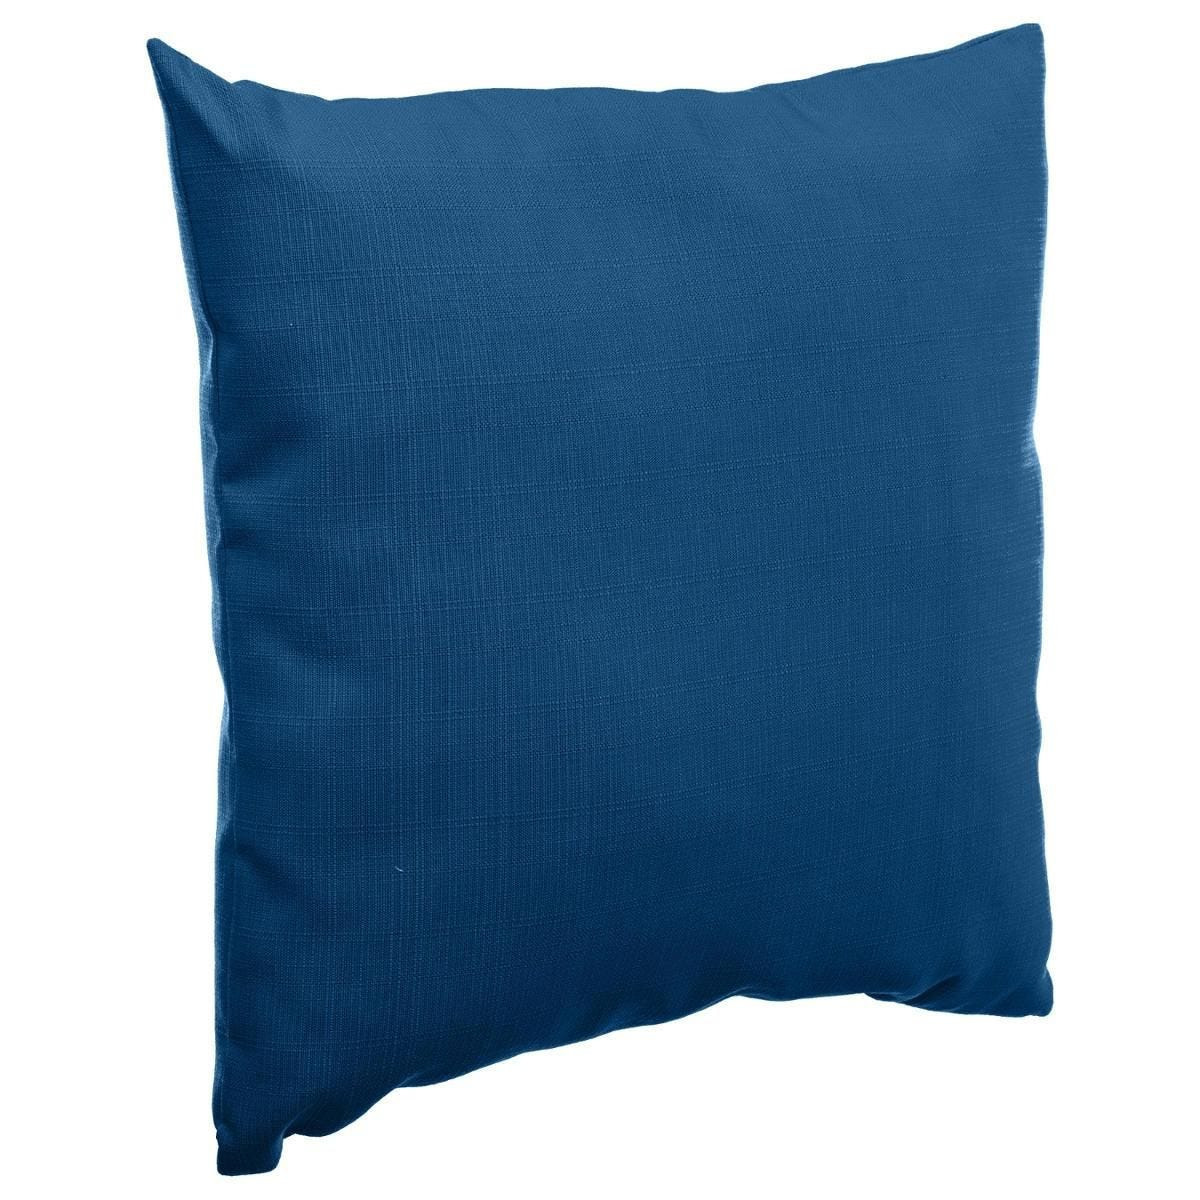 Bank-sier-tuin kussens voor binnen en buiten in de kleur Indigo blauw 40 x 40 x 10 cm